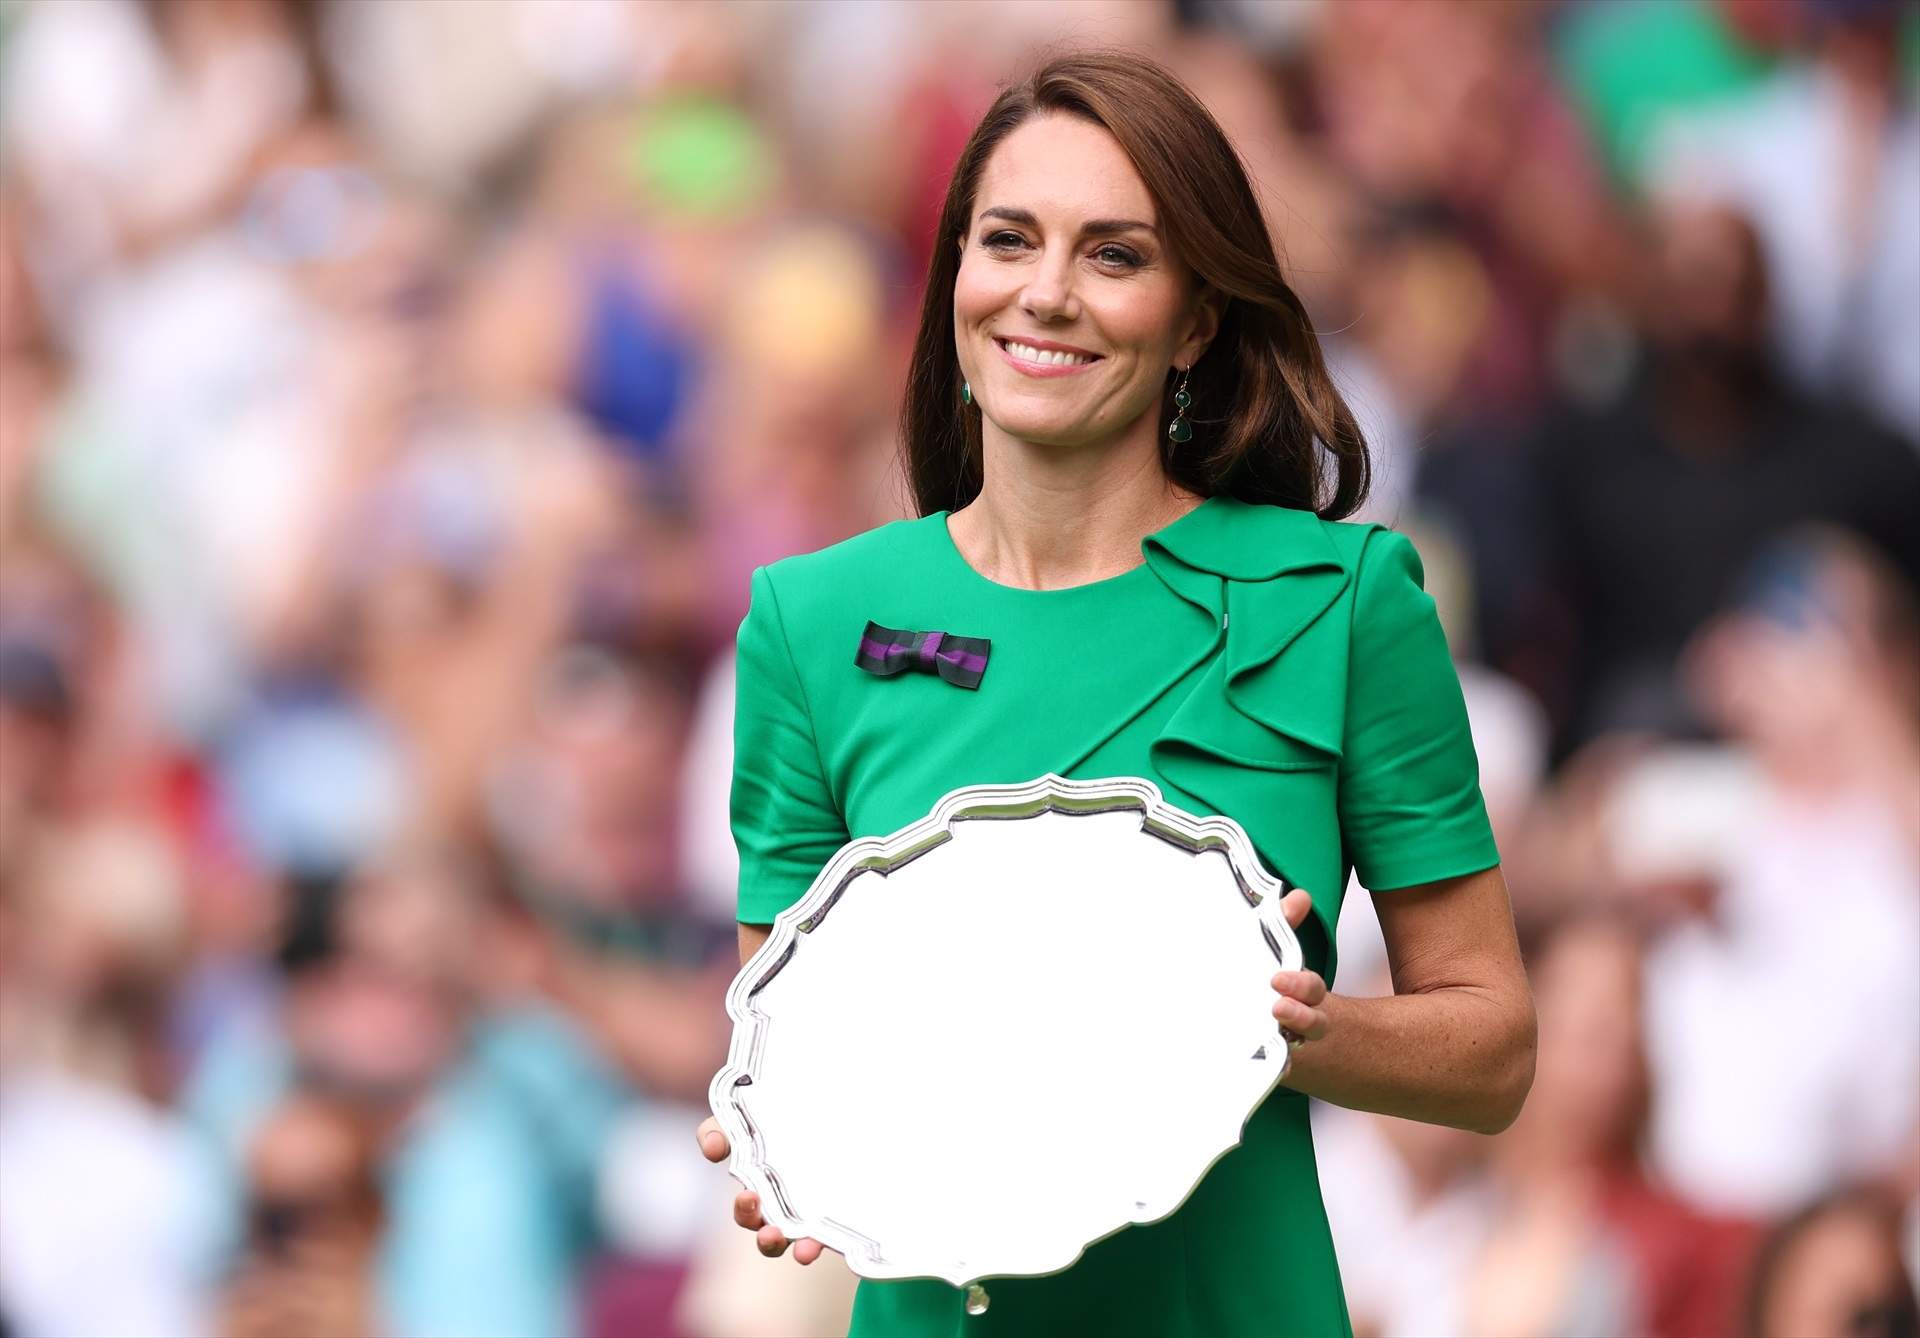 Kate Middleton reapareixerà aquest diumenge per entregar el trofeu de Wimbledon